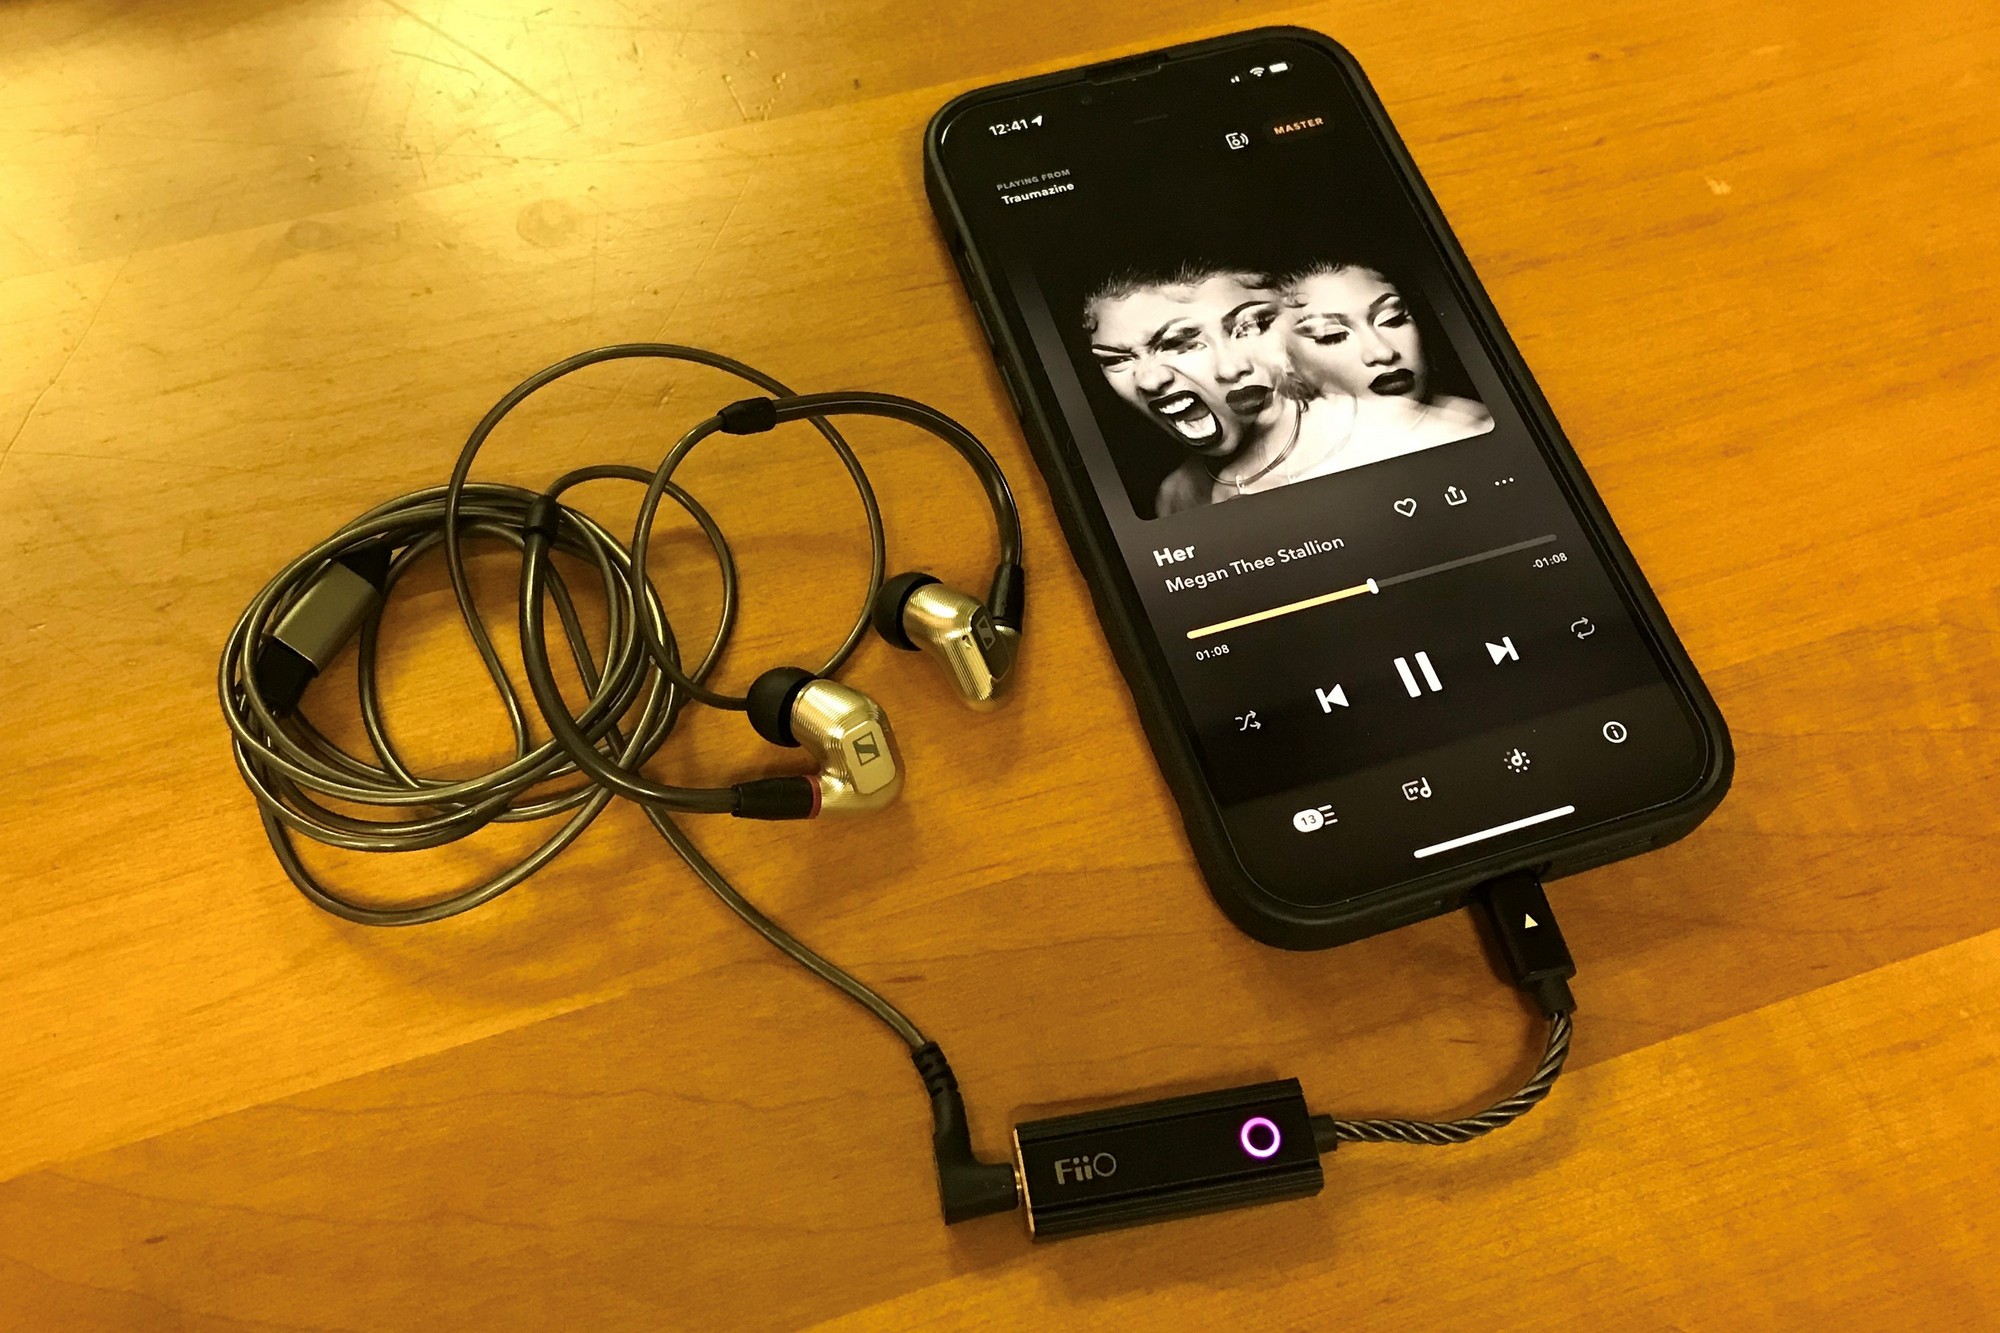 Fiio KA1 DAC/headphone amp review: Mobile Hi-Fi on a budget | TechHive